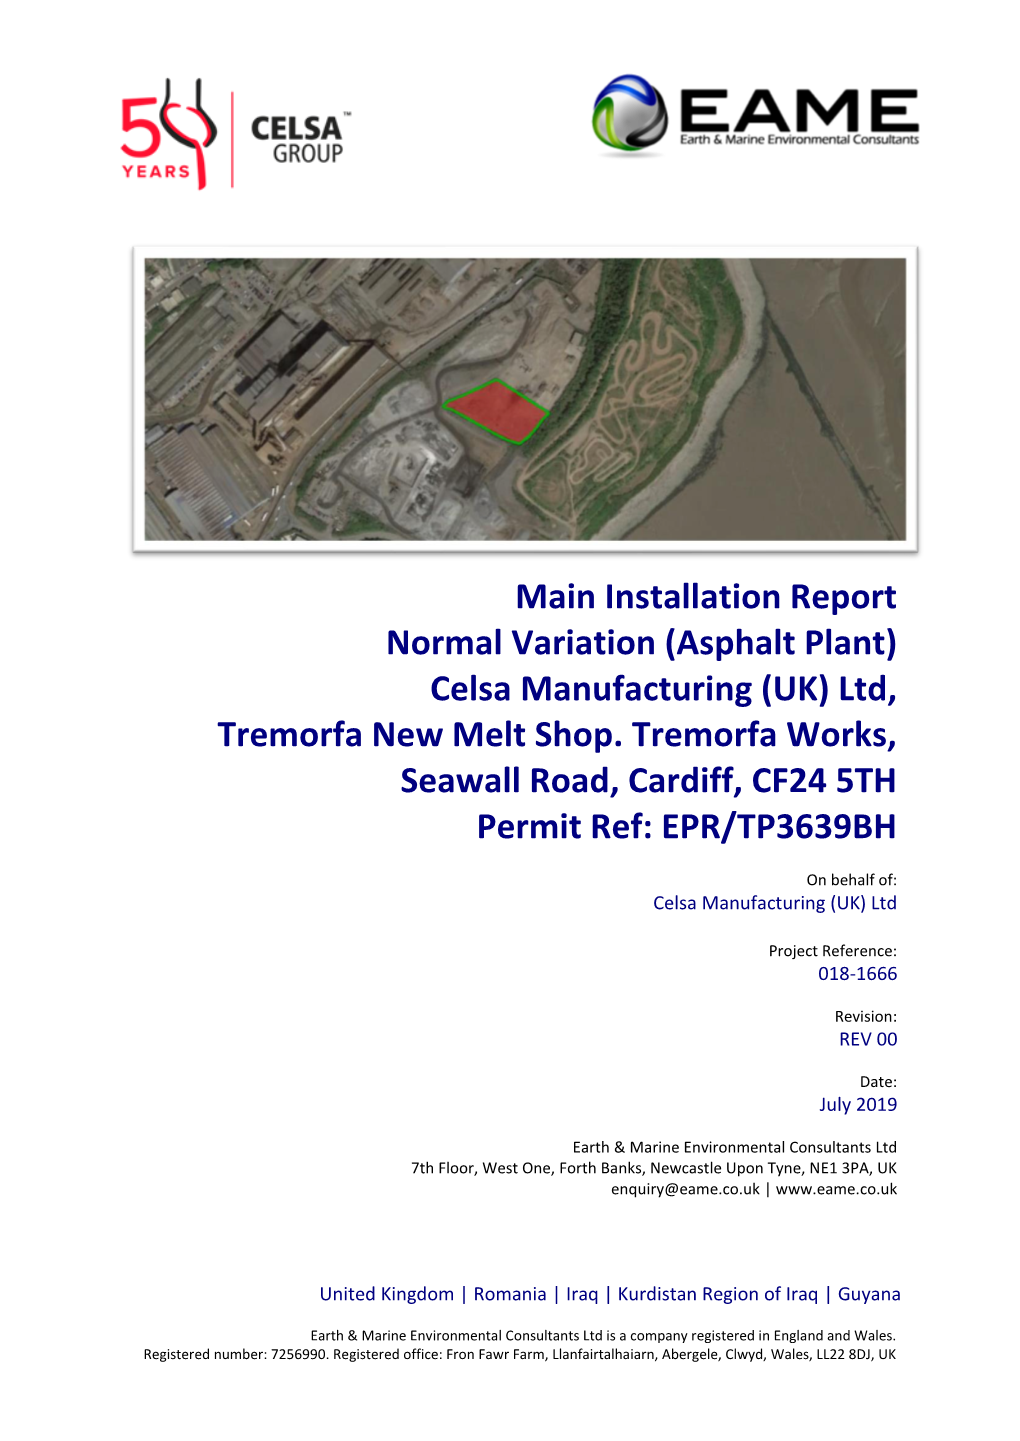 Installation Report Normal Variation (Asphalt Plant) Celsa Manufacturing (UK) Ltd, Tremorfa New Melt Shop